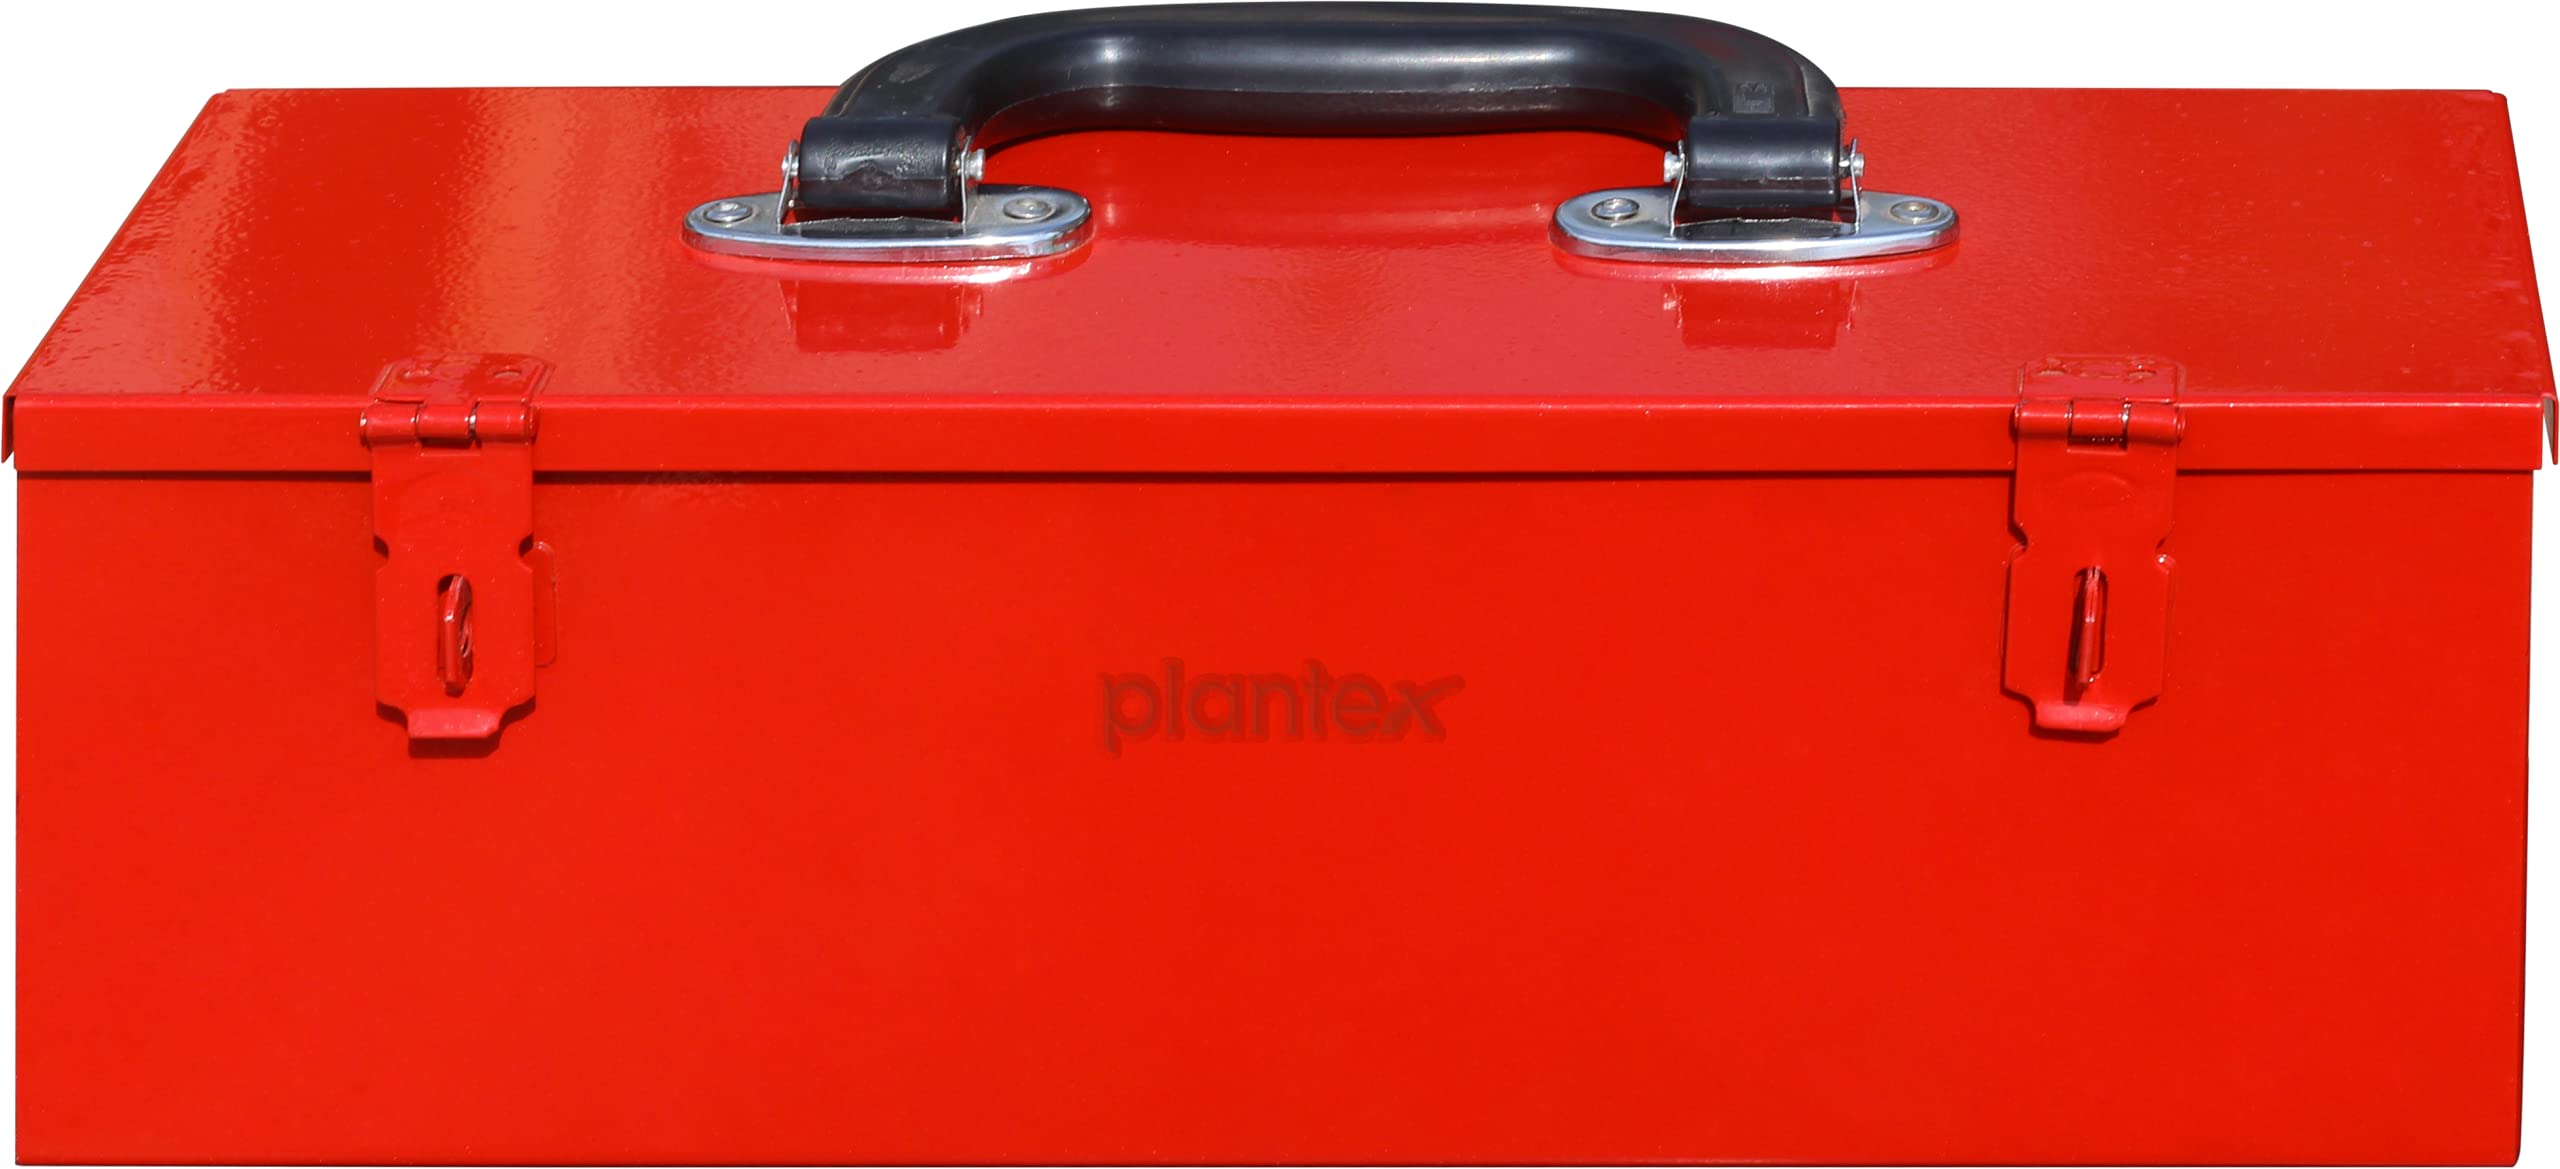 Plantex Metal Tool Box for Tool/Tool Kit Box for Home and Garage